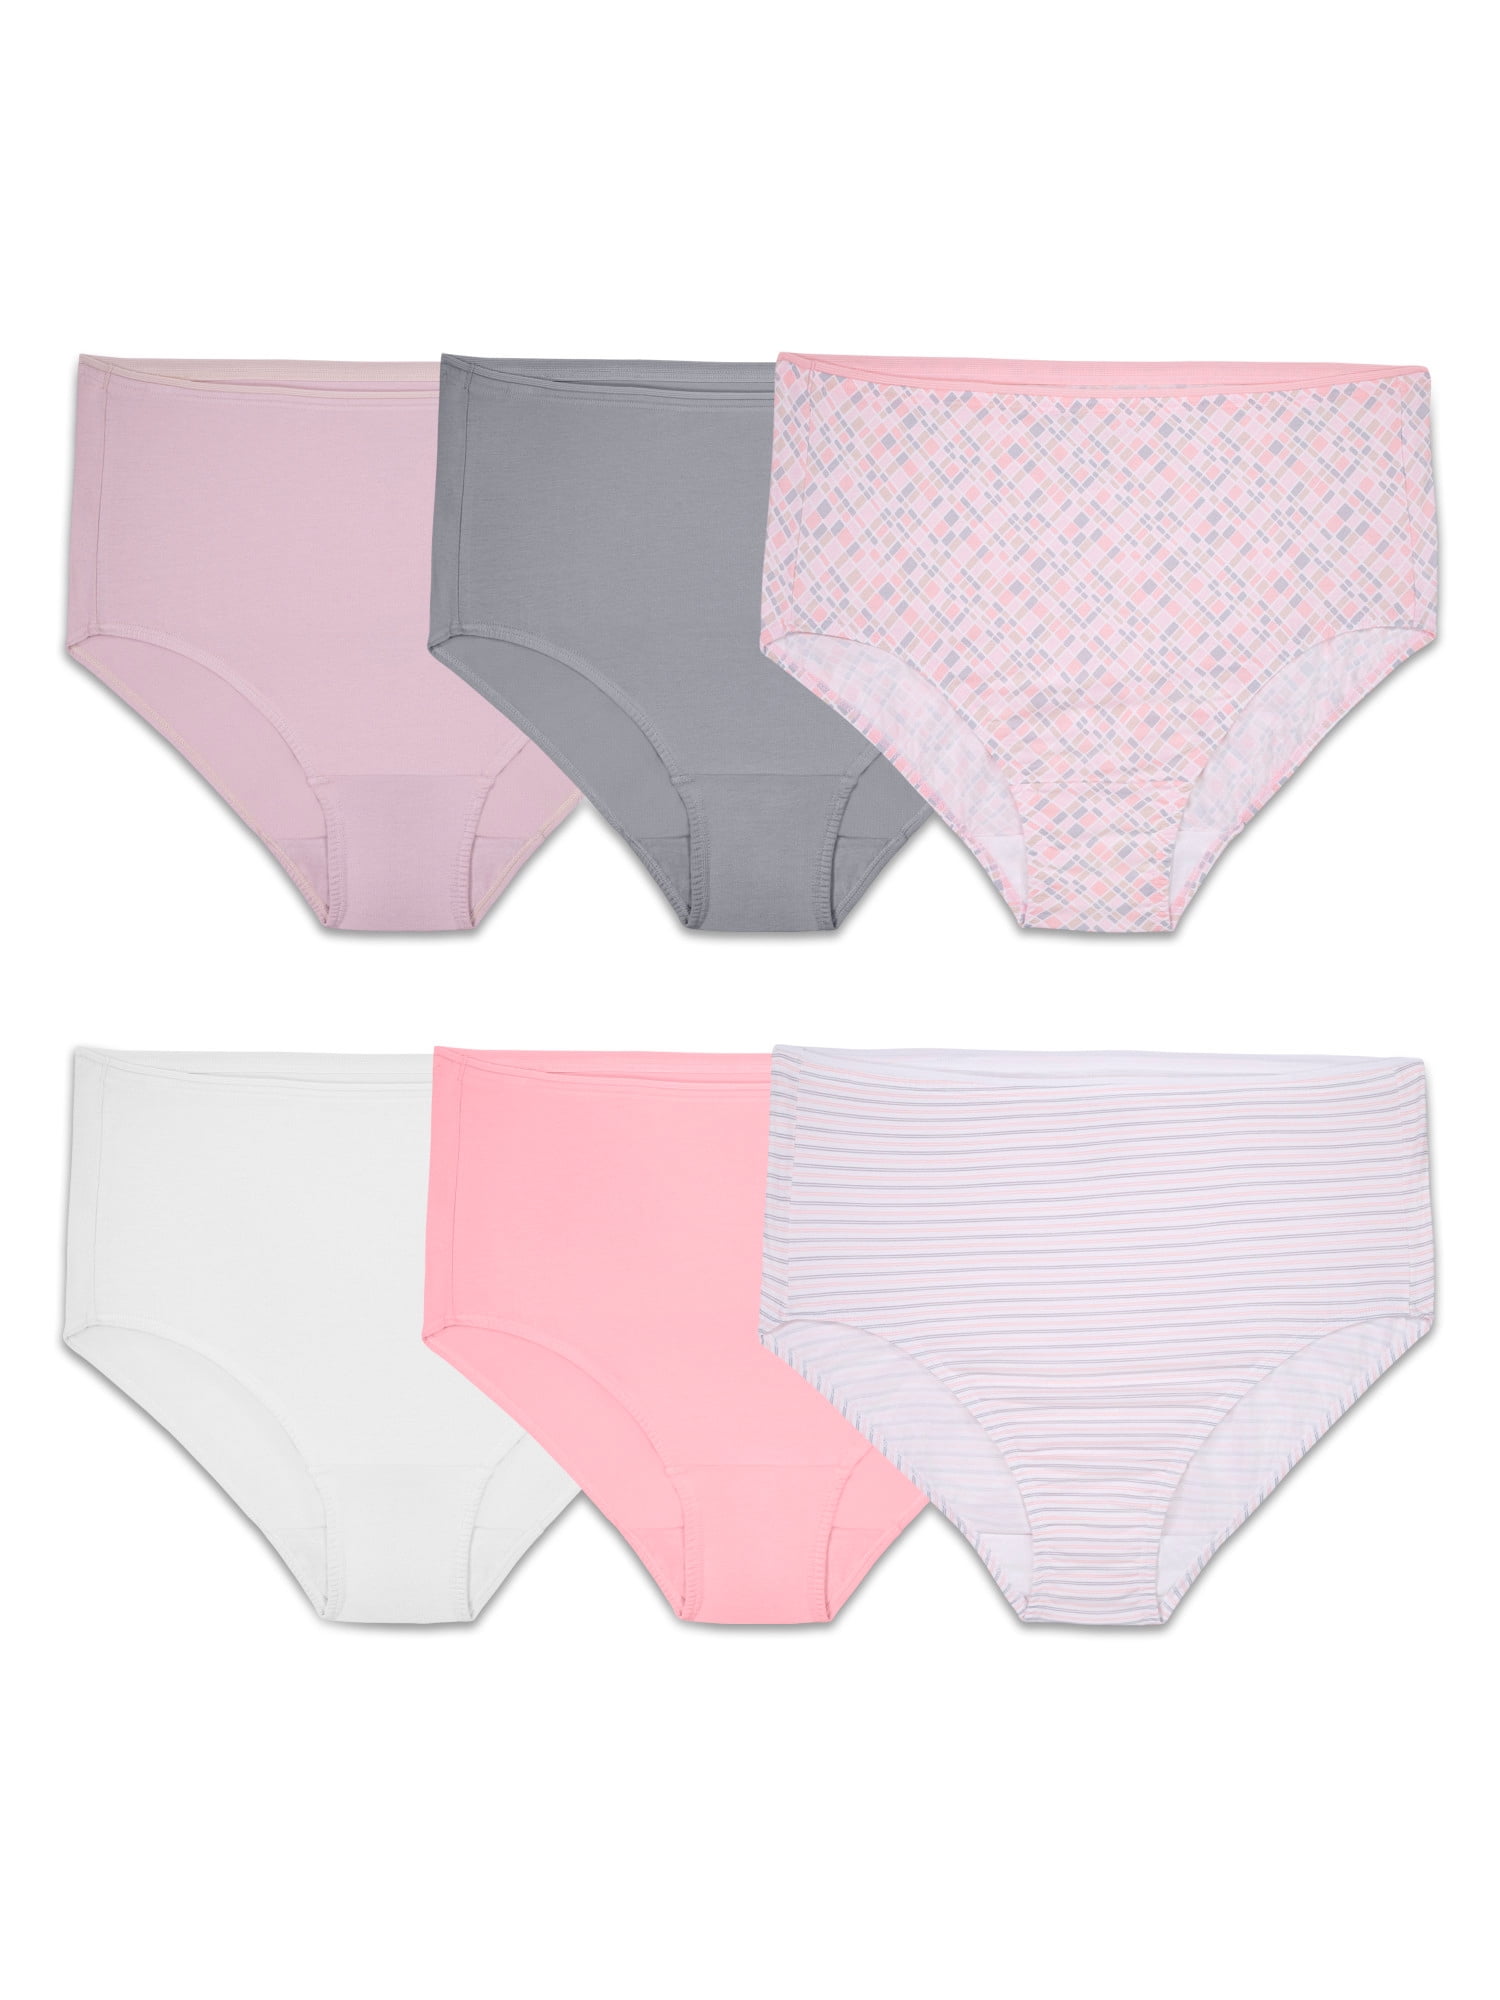 Afeef Online. Women's Underwear Free Size Set of 6 Pieces (Style41)